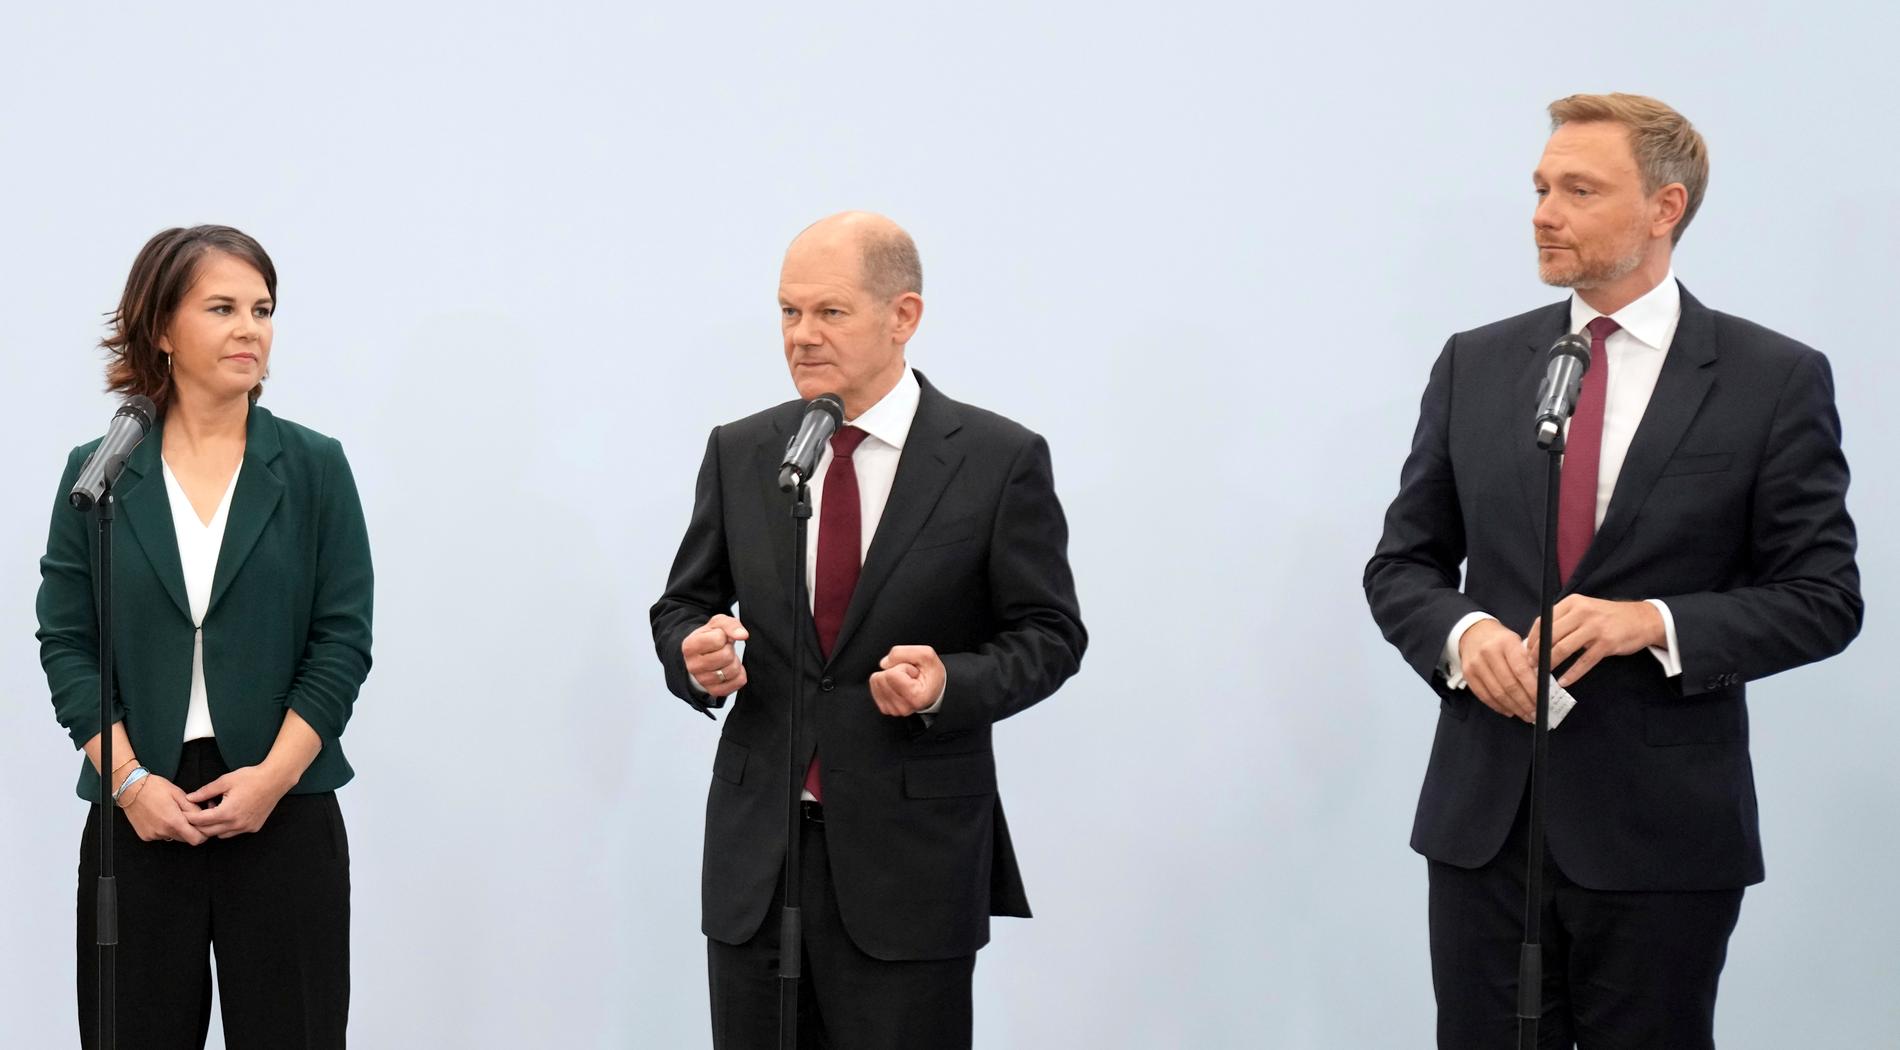 De grönas språkrör Annalena Baerbock (till vänster), Socialdemokraternas kanslerkandidat Olaf Scholz (mitten) och liberala FDP:s ledare Christian Lindner (till höger) i samband med att de tidigare denna månad höll överläggningar i Berlin. Arkivbild.